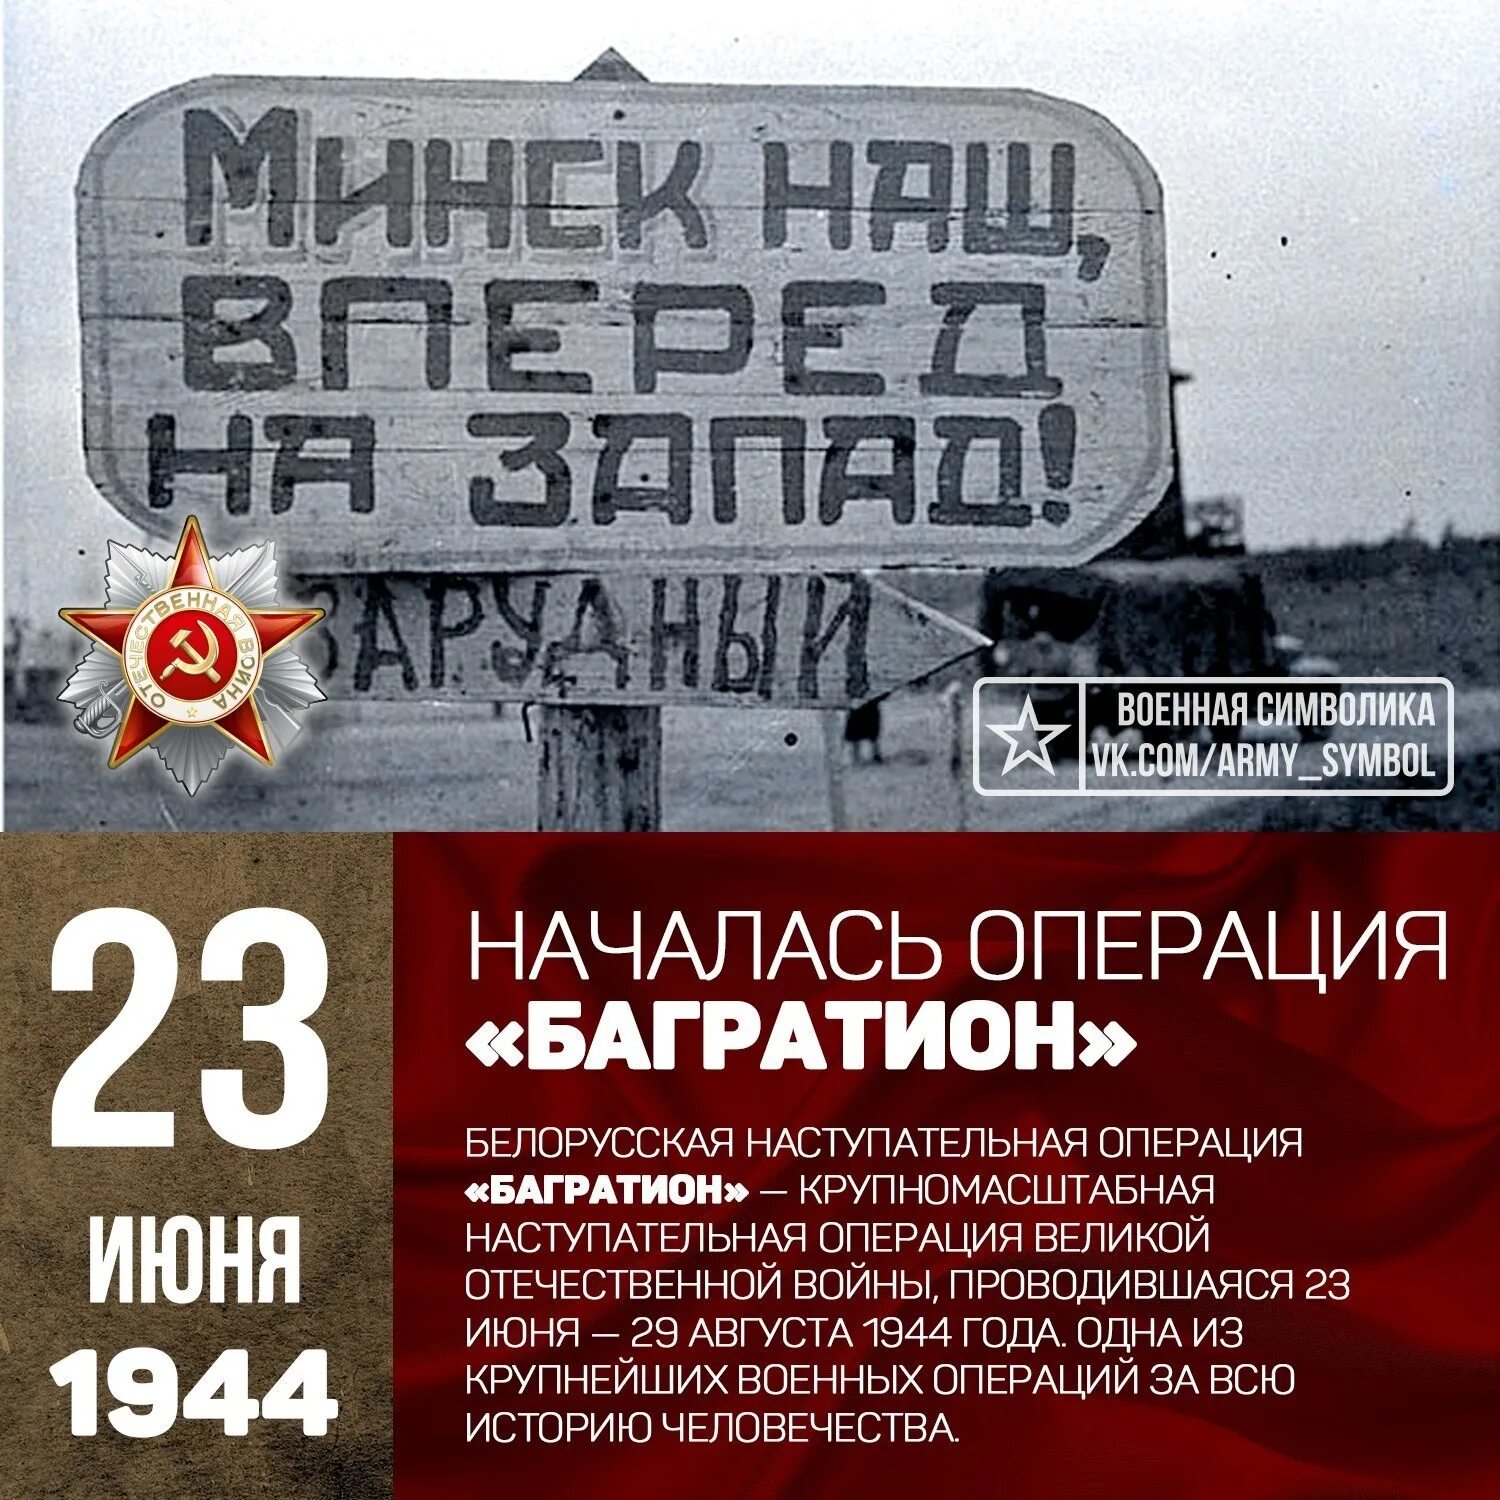 Когда произошла операция багратион. Белорусская операция 23 июня 29 августа 1944. 23 Июня 1944 года началась операция Багратион. 23 Июня началась белорусская наступательная операция «Багратион». Белоруссия 1944 Багратион.